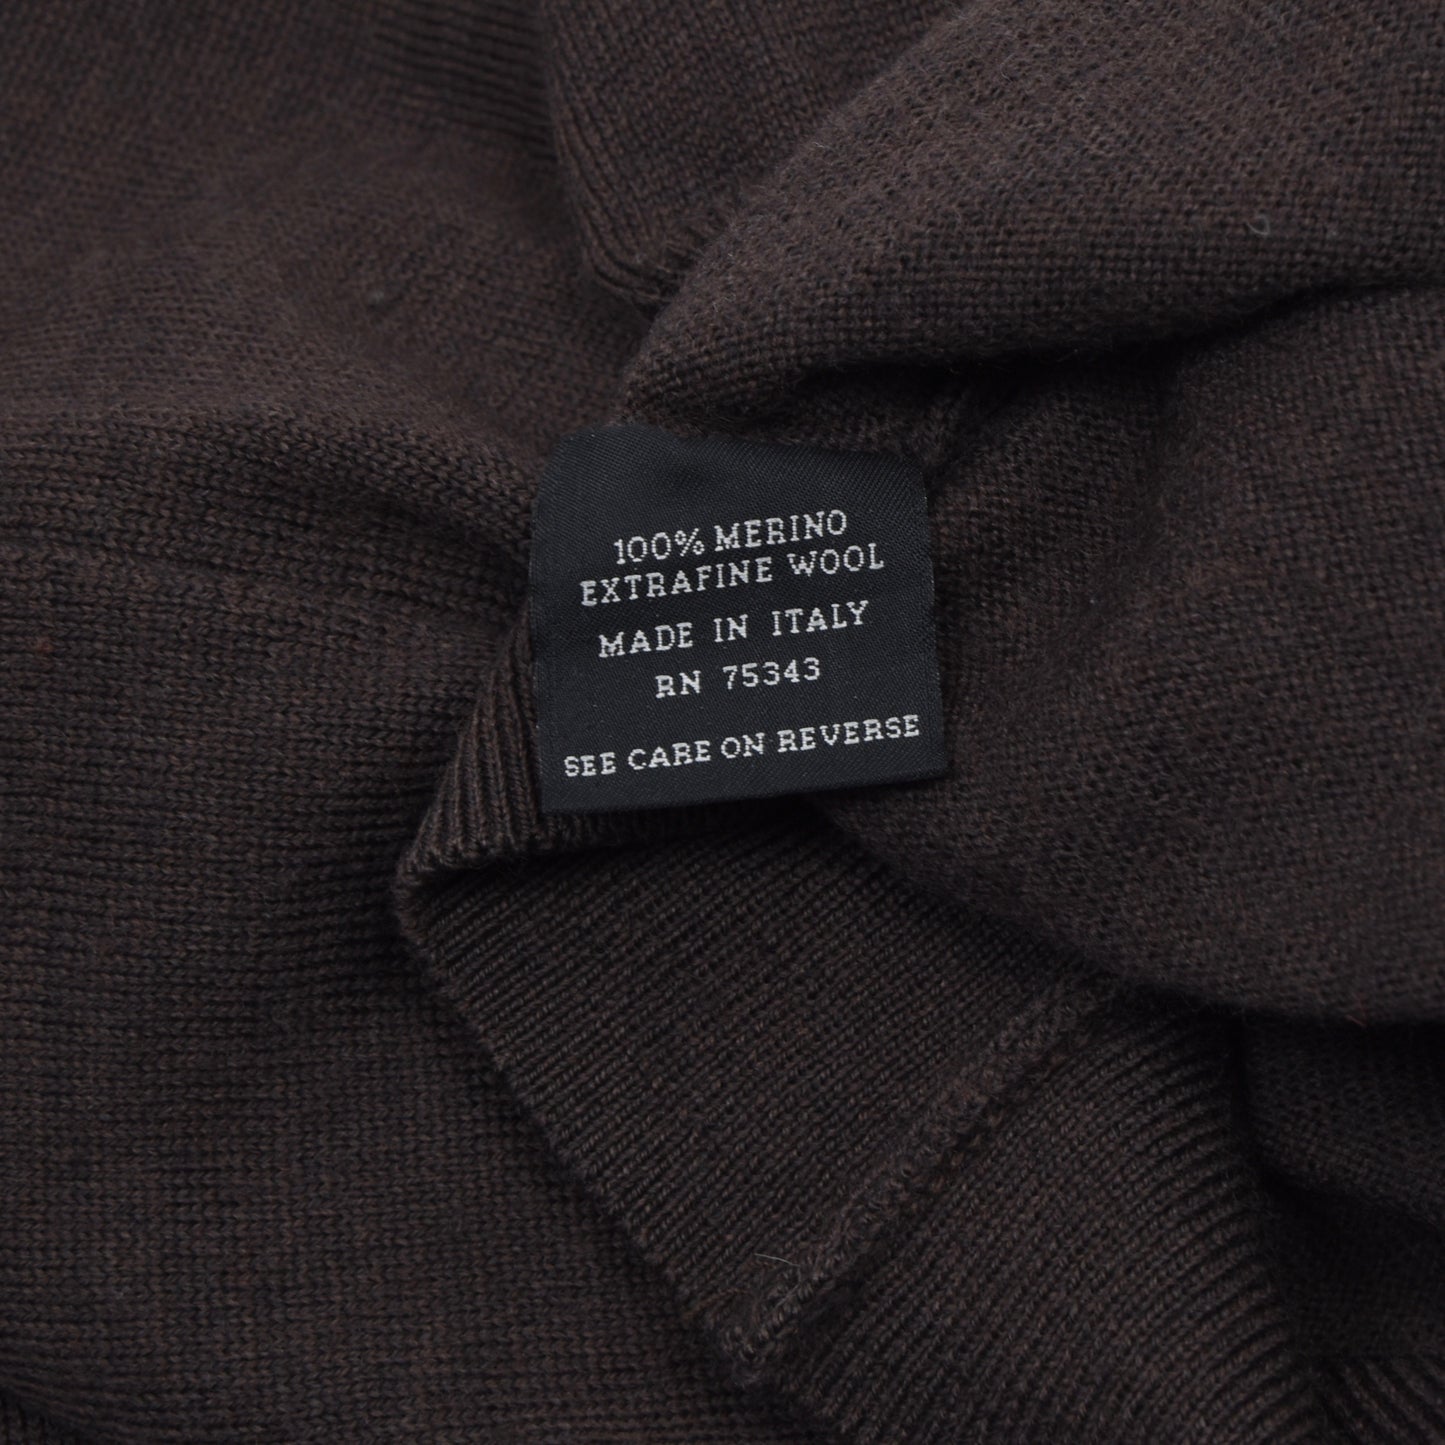 Marco Fiori Wool 1/4 Zip Sweater Size M - Brown